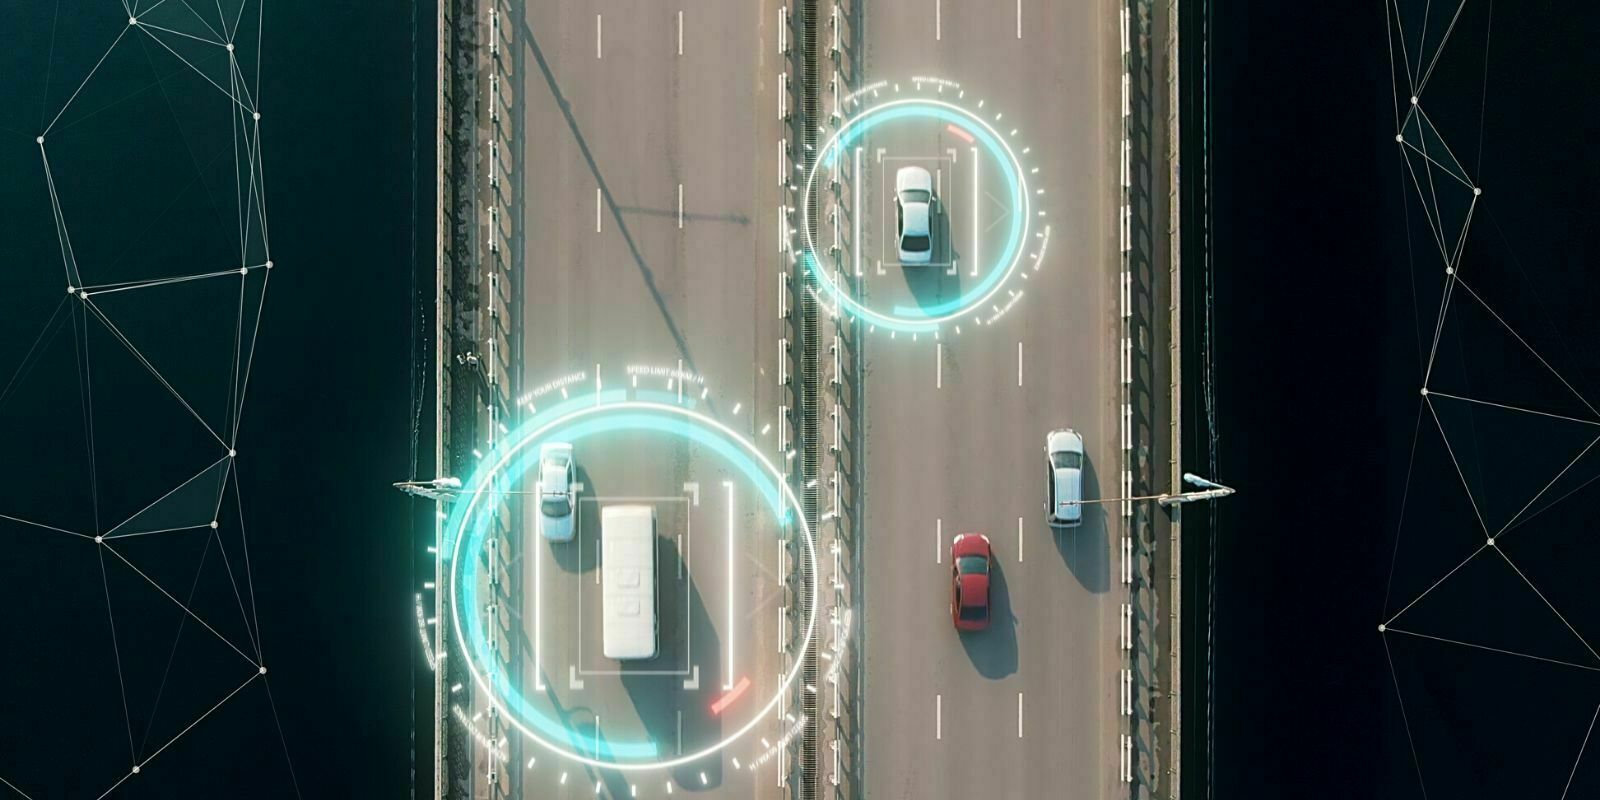 Corée du Sud : la blockchain expérimentée pour l'identification des véhicules autonomes